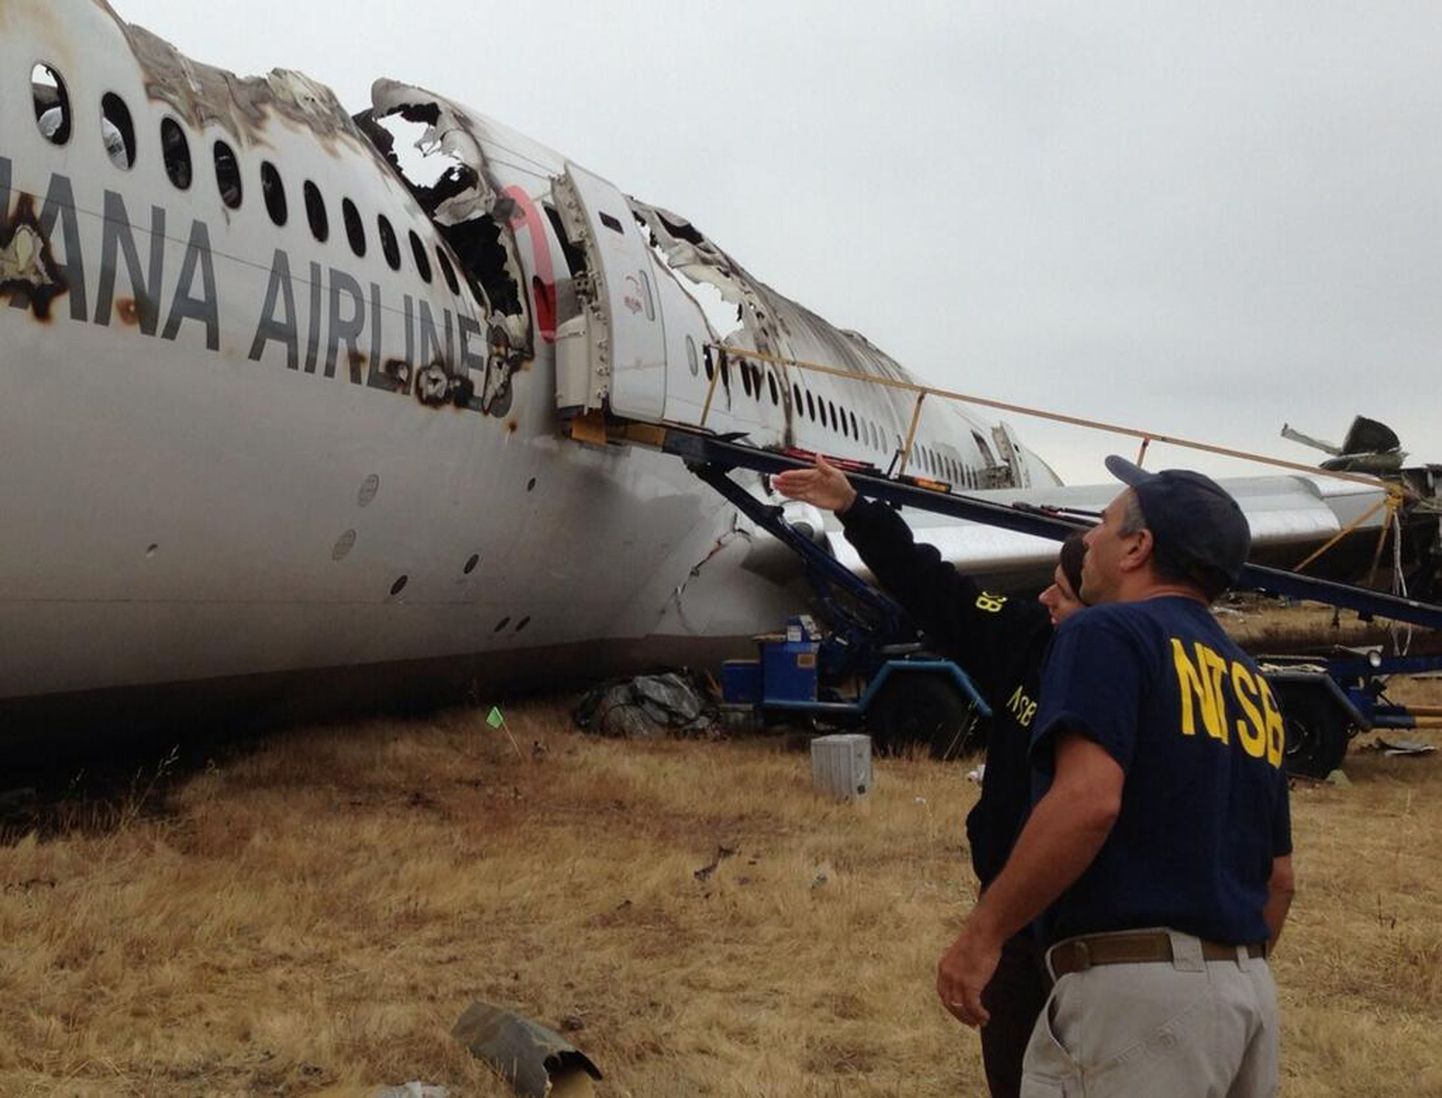 Южнокорейский перевозчик Asiana Airlines собирается подать в суд на калифорнийский телеканал KTVU и Совет по безопасности на транспорте при правительстве США за распространение оскорбительных "имен" пилотов Boeing-777, потерпевшего катастрофу в аэропорту Сан-Франциско.